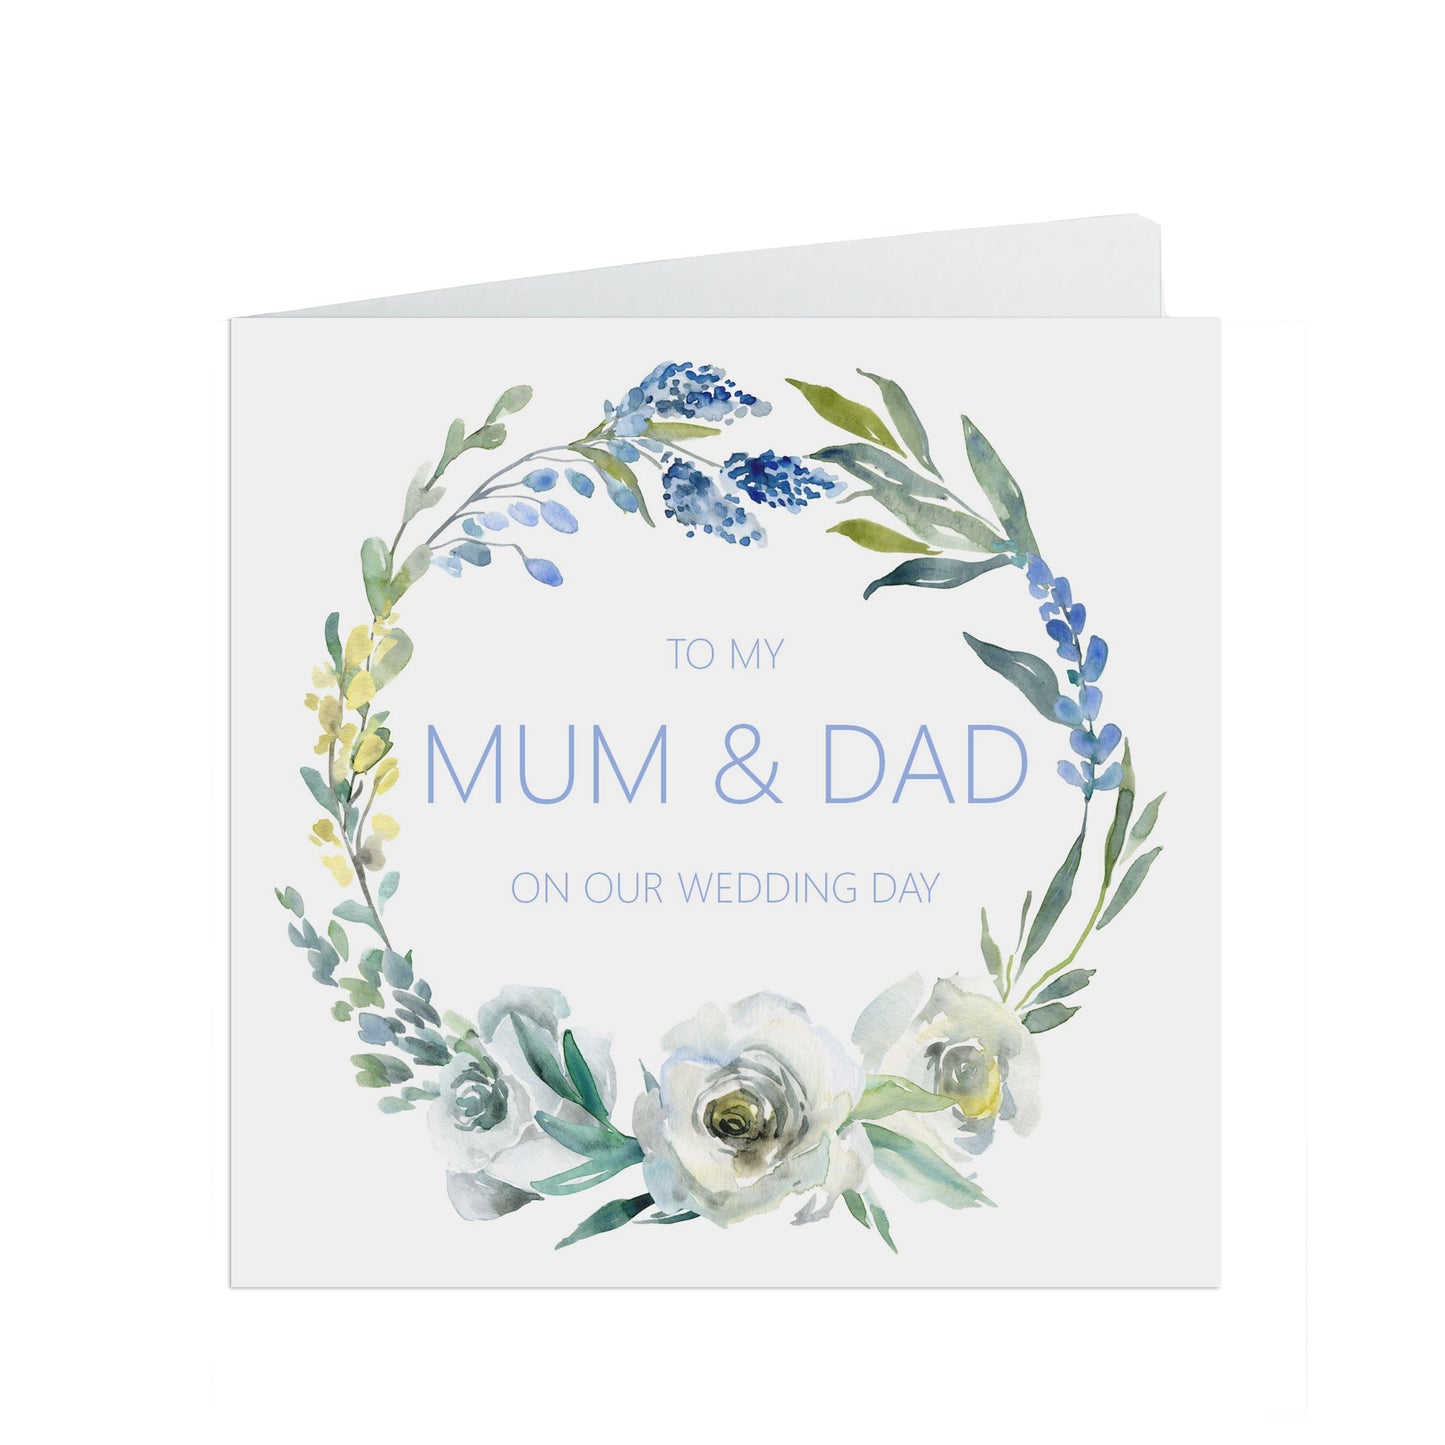 Mum & Dad Wedding Day Card - Blue Floral